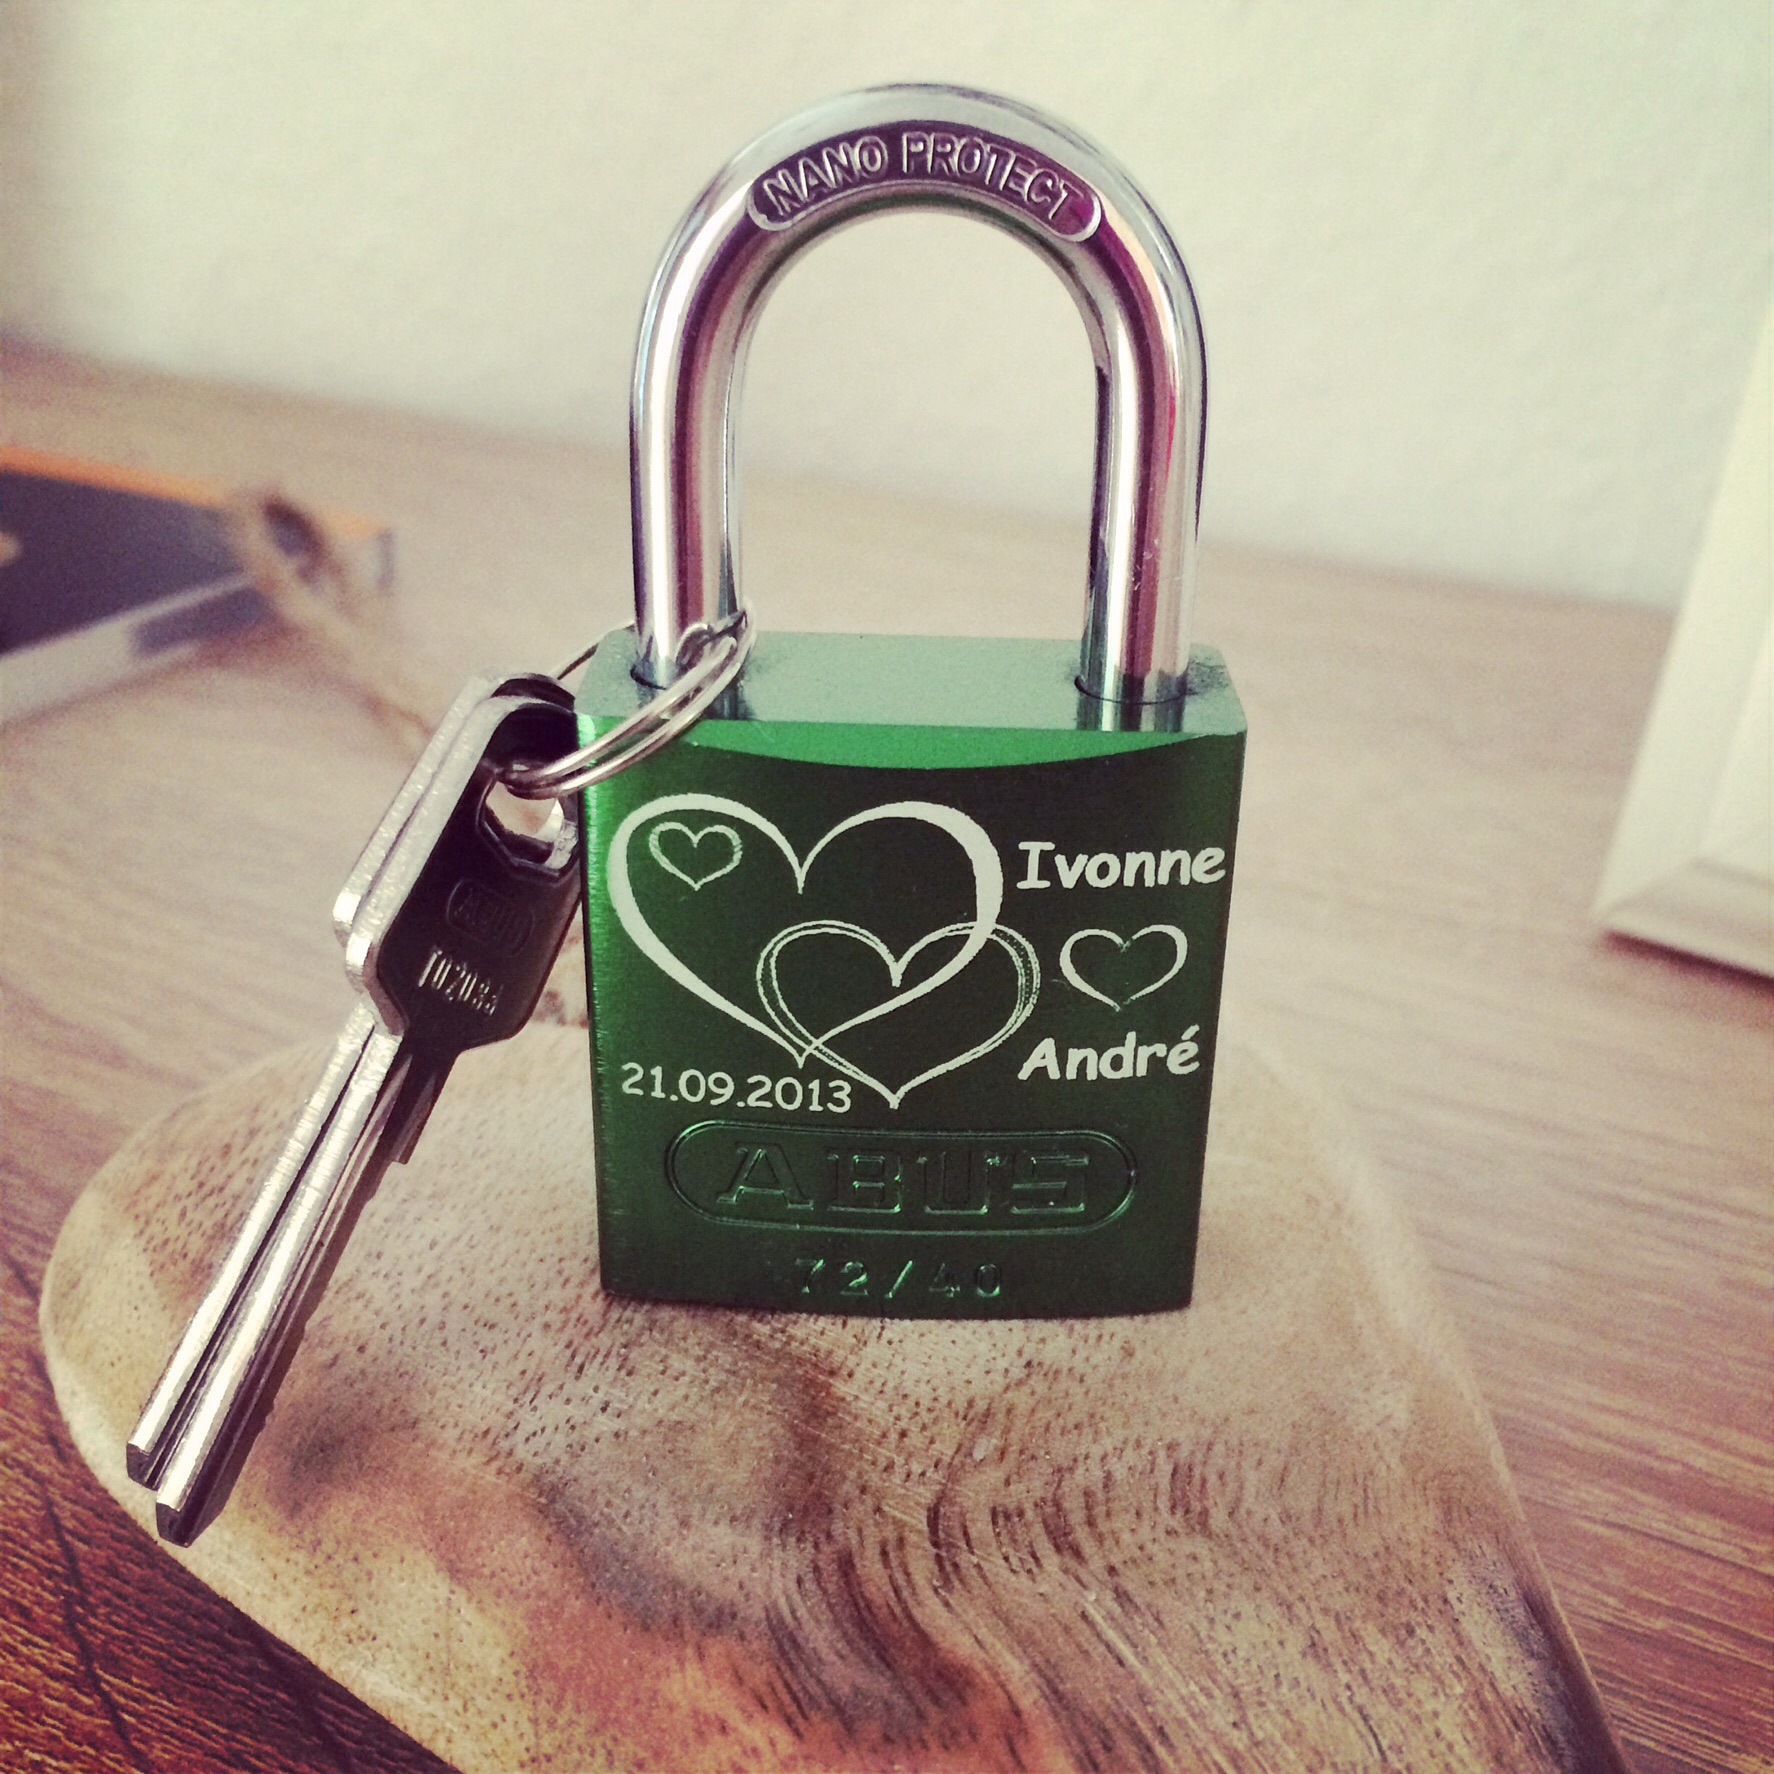 Grünes Liebesschloss mit Gravur und angehängten Schlüsseln auf einem Holzbrett.